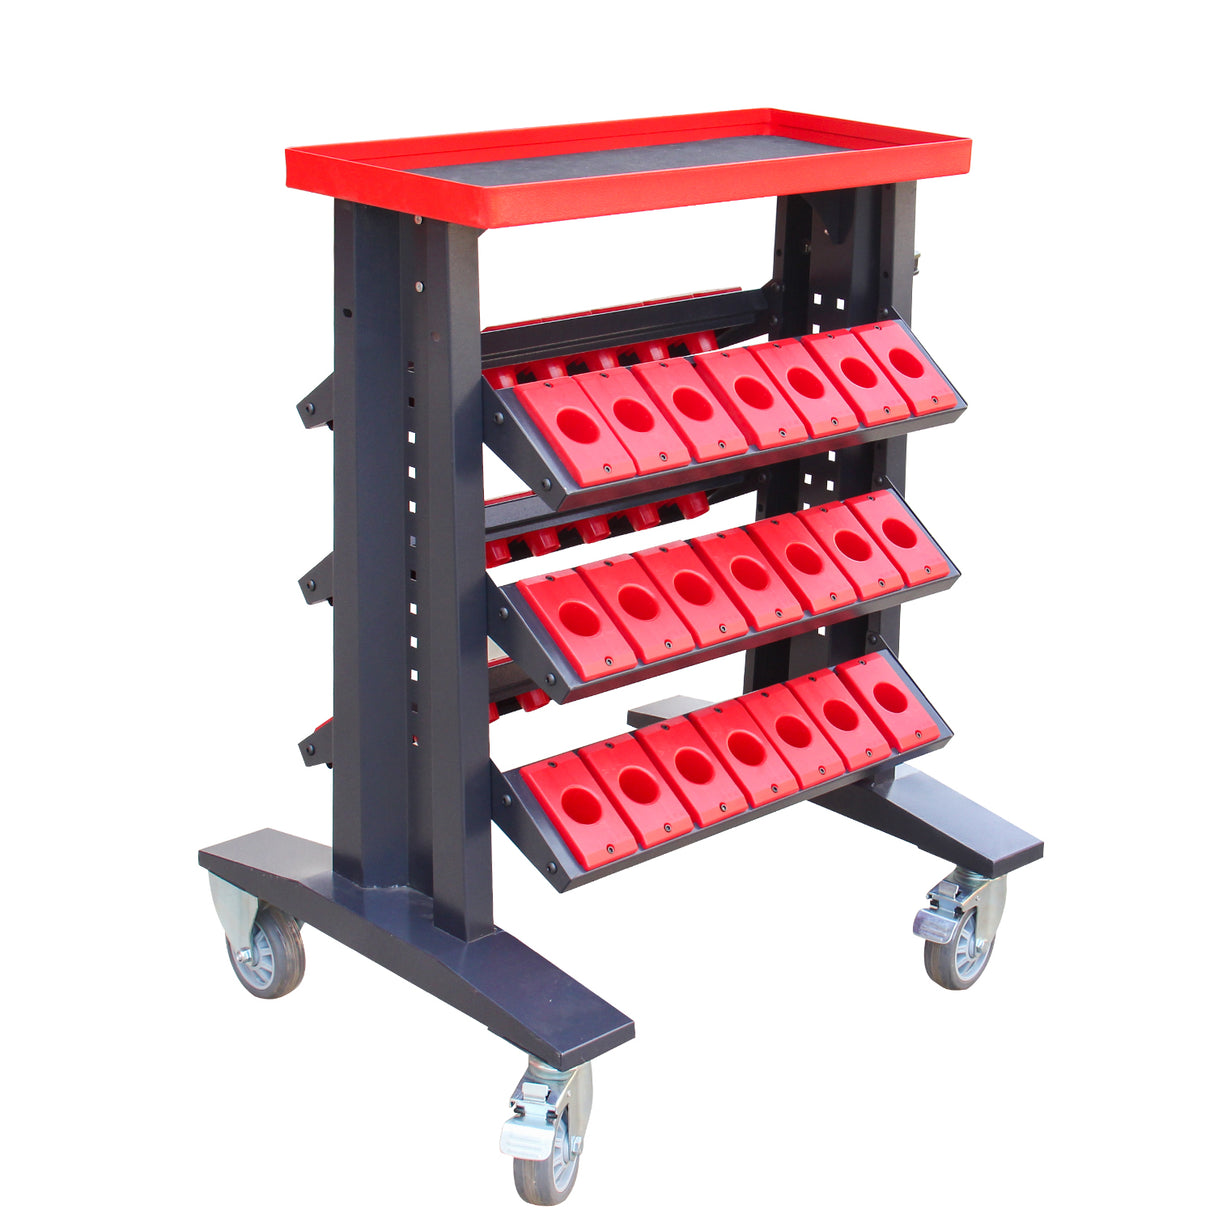 Kang Industrial DJC-940C Tool Cart, 42 Holders Capacity